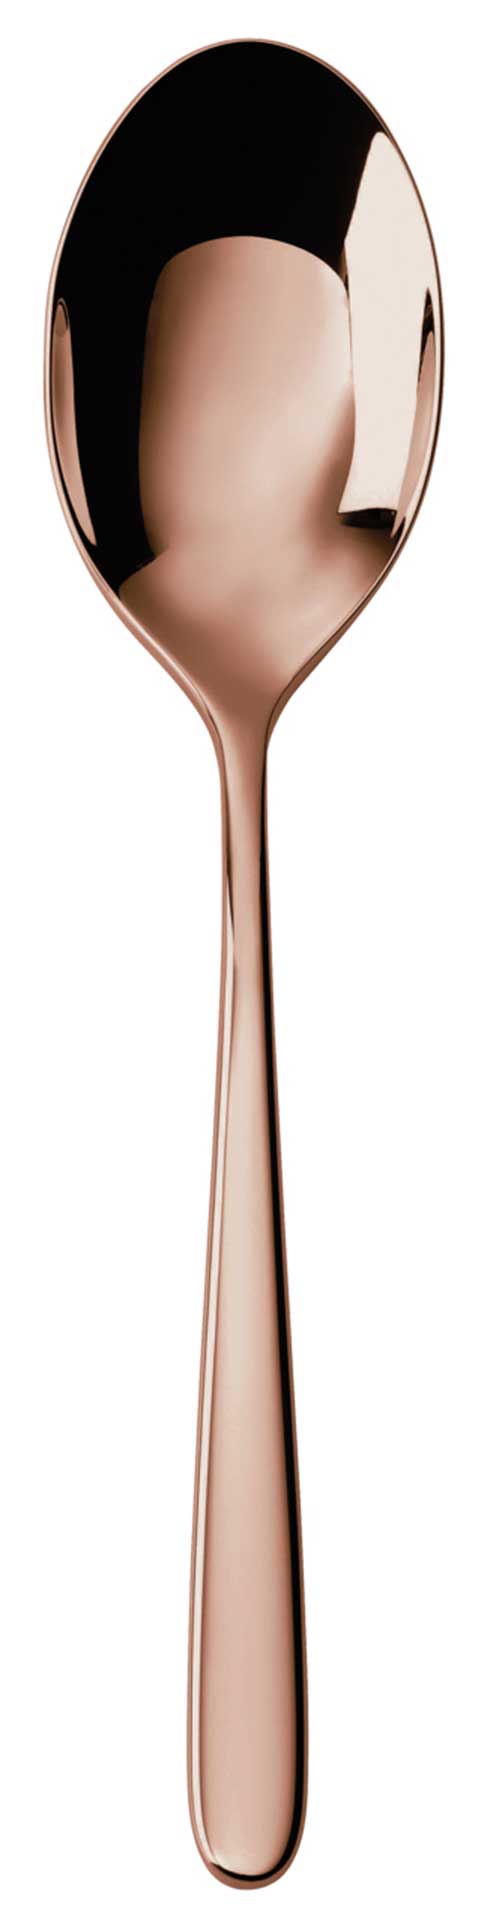 $57.00 Copper - Serving Spoon 18/10 s/s - PVD Mirror Copper